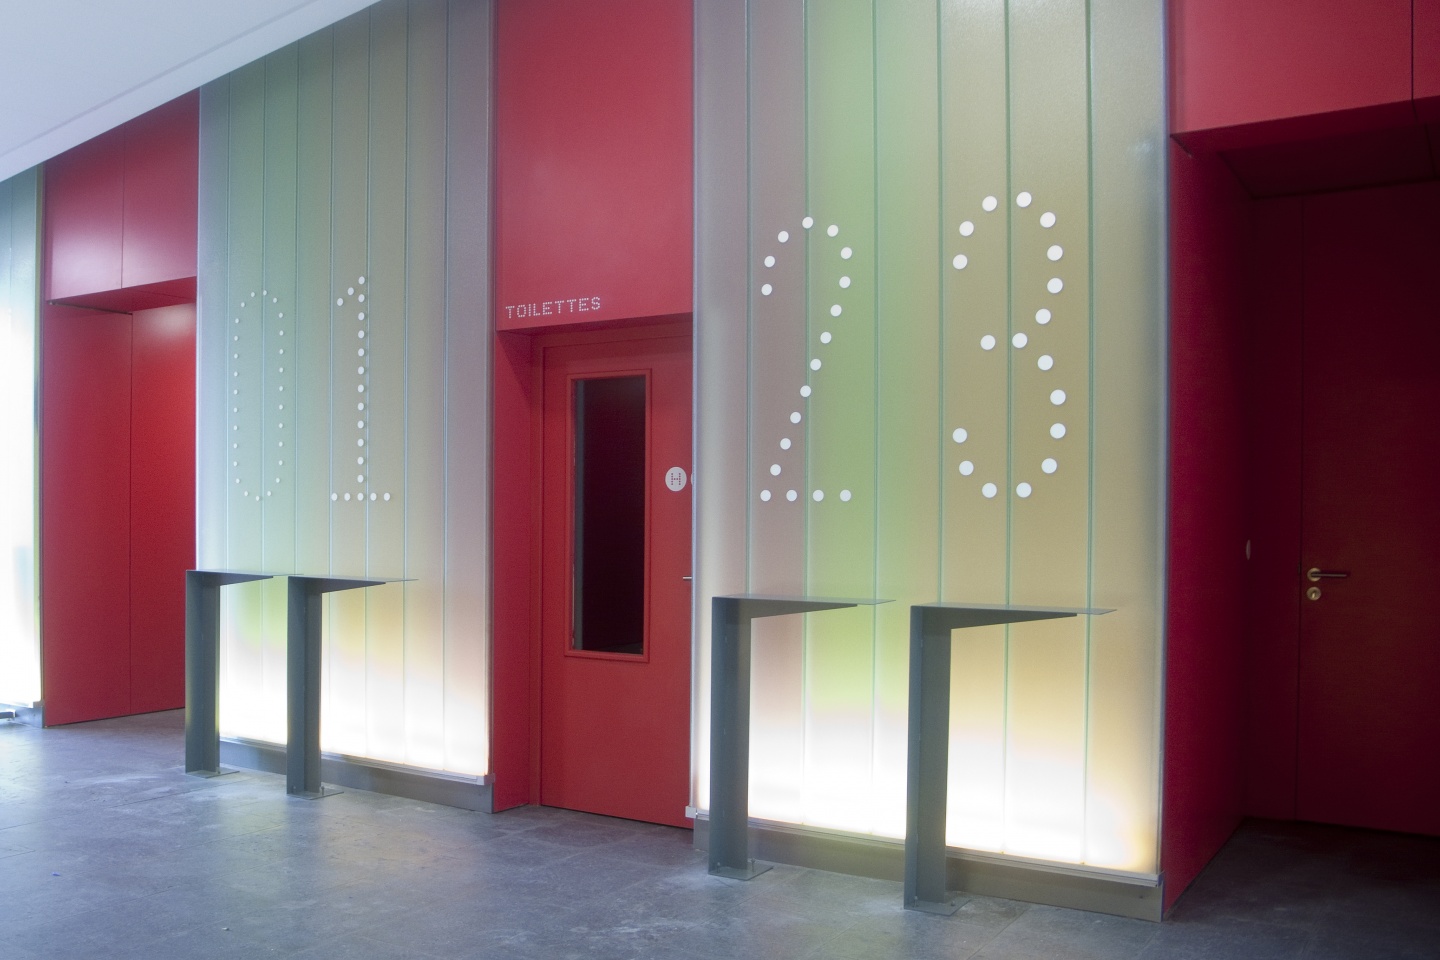 Un dispositif sur mesure prend place dans les trois halls: chiffres posés sur les parois vitrées rétroéclairées et tablettes sur lesquelles les noms des sociétés sont indiqués.